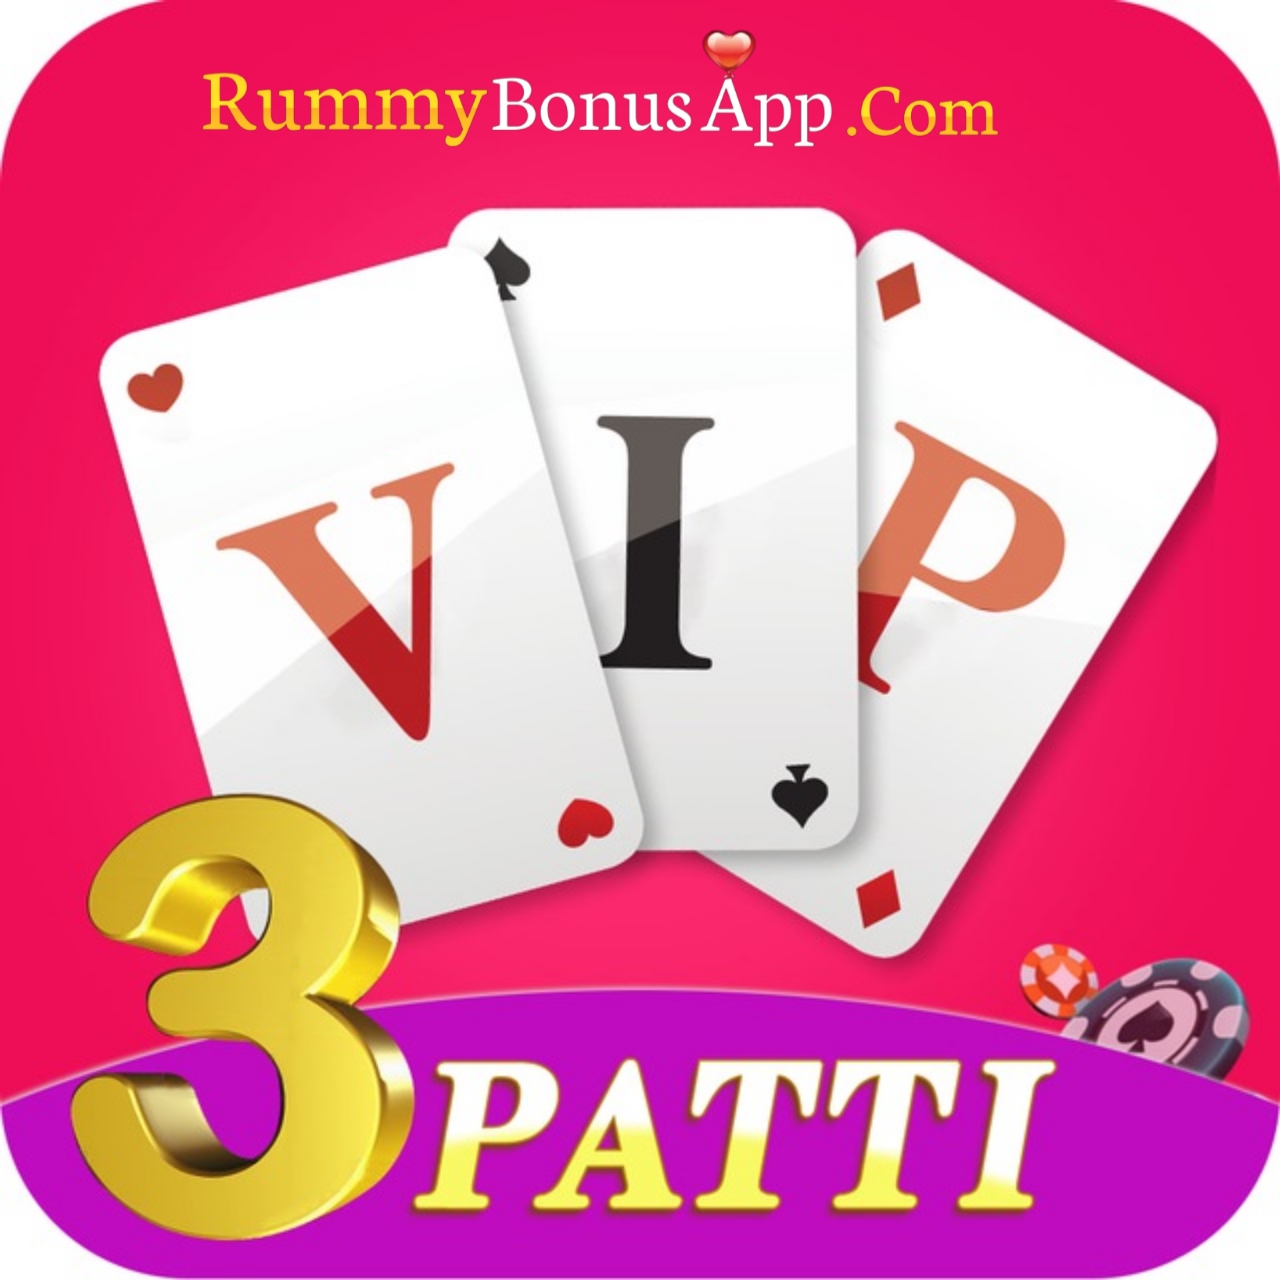 VIP 3 Patti  - All Rummy App - All Rummy Apps - RummyBonusApp